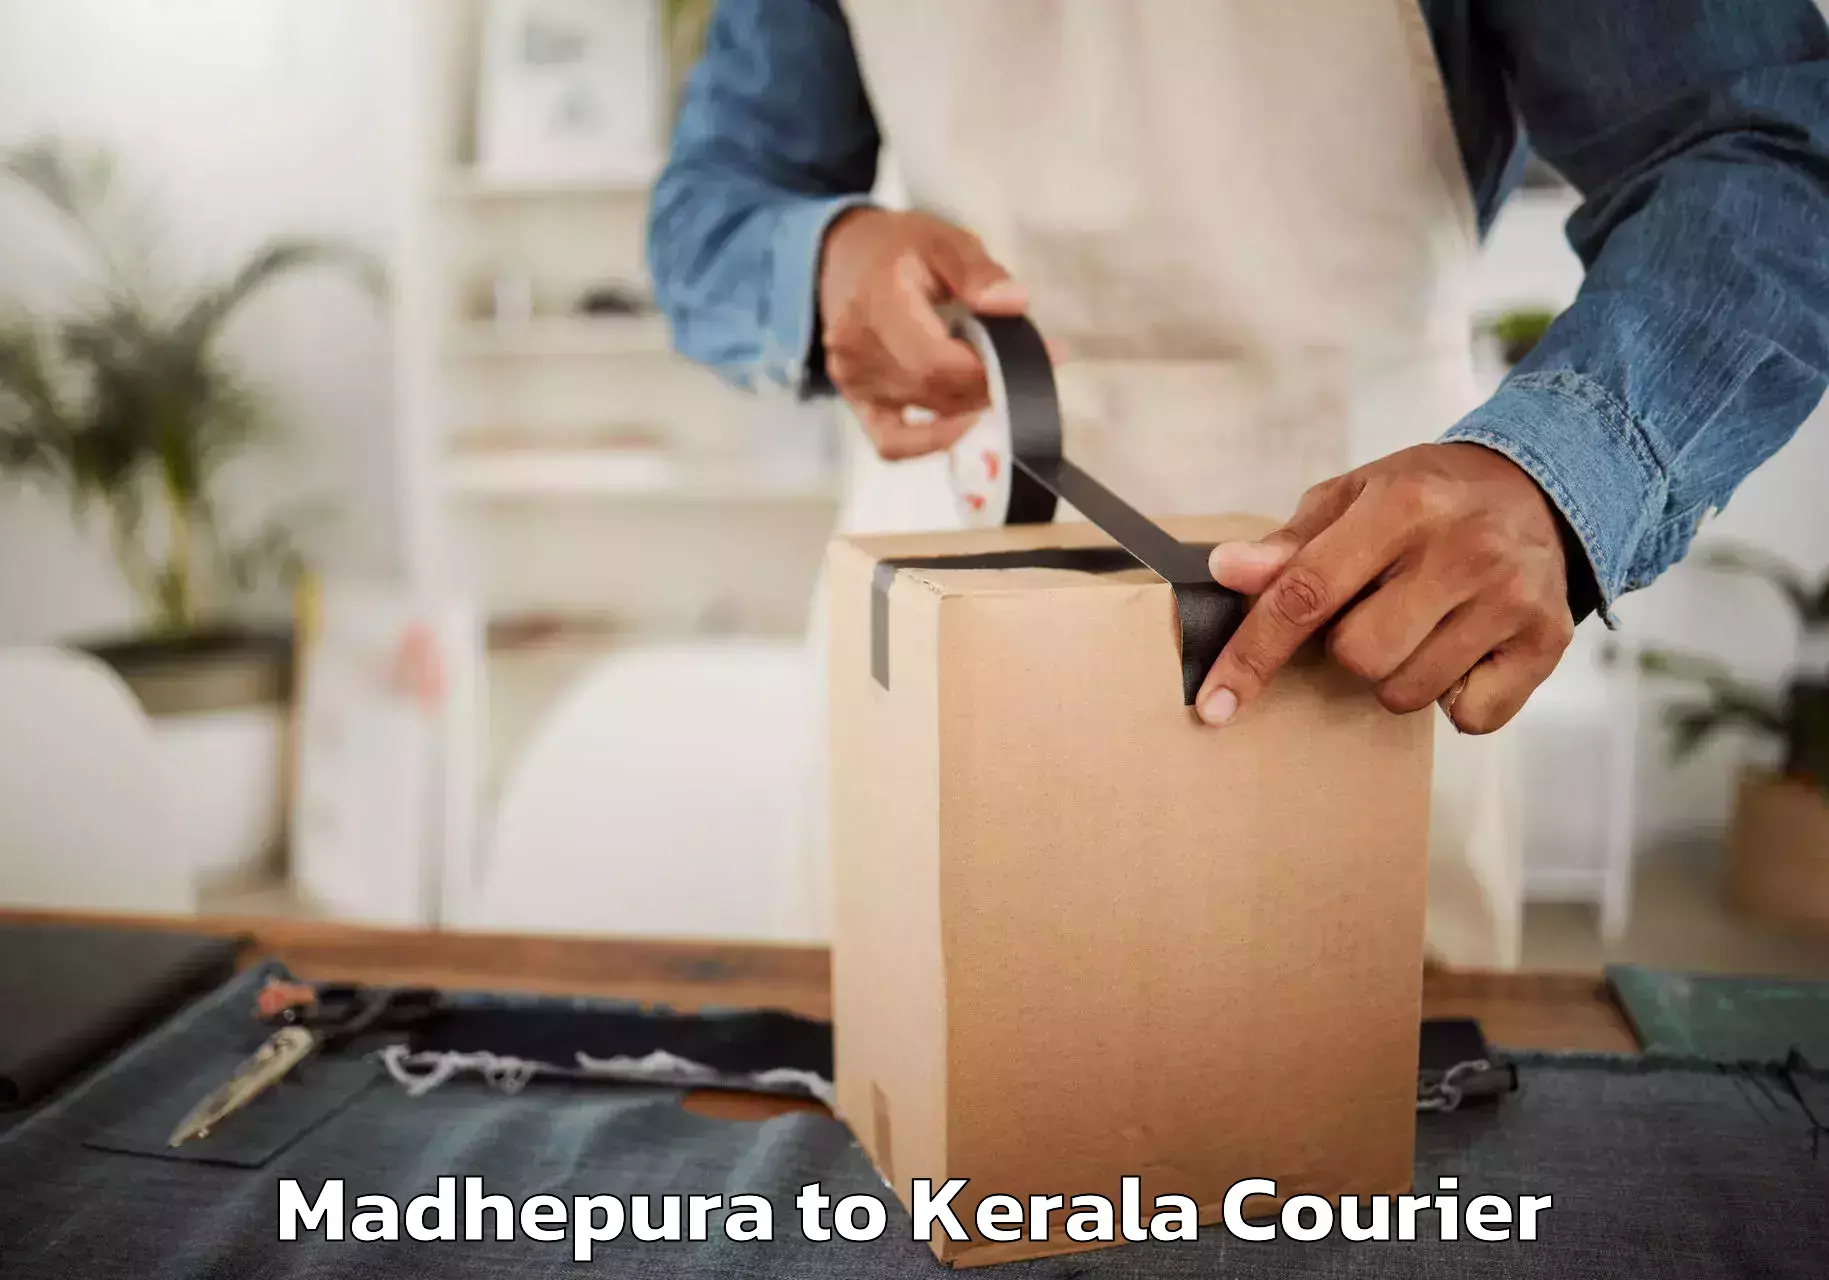 Professional home movers Madhepura to Kerala